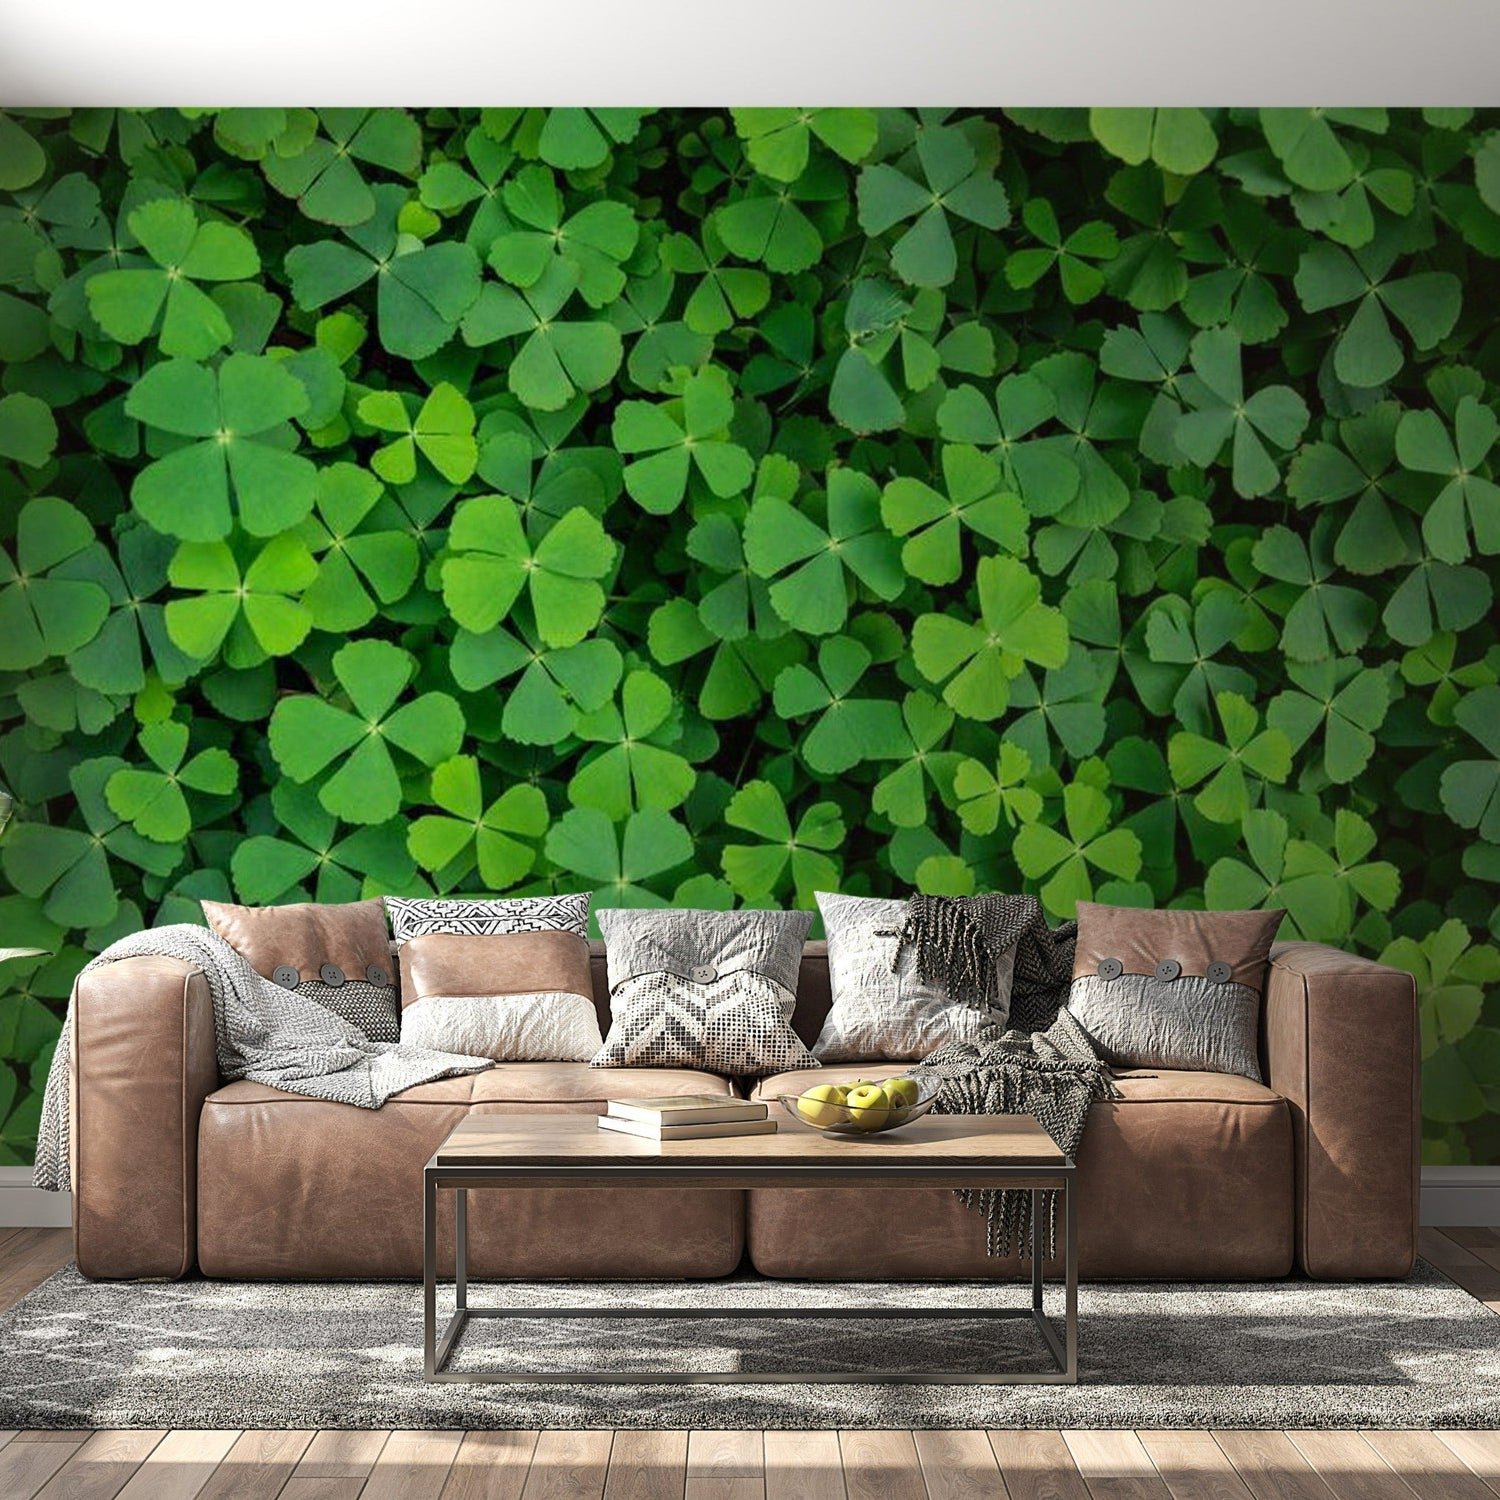 Botanical Wallpaper Wall Mural - Green Clover